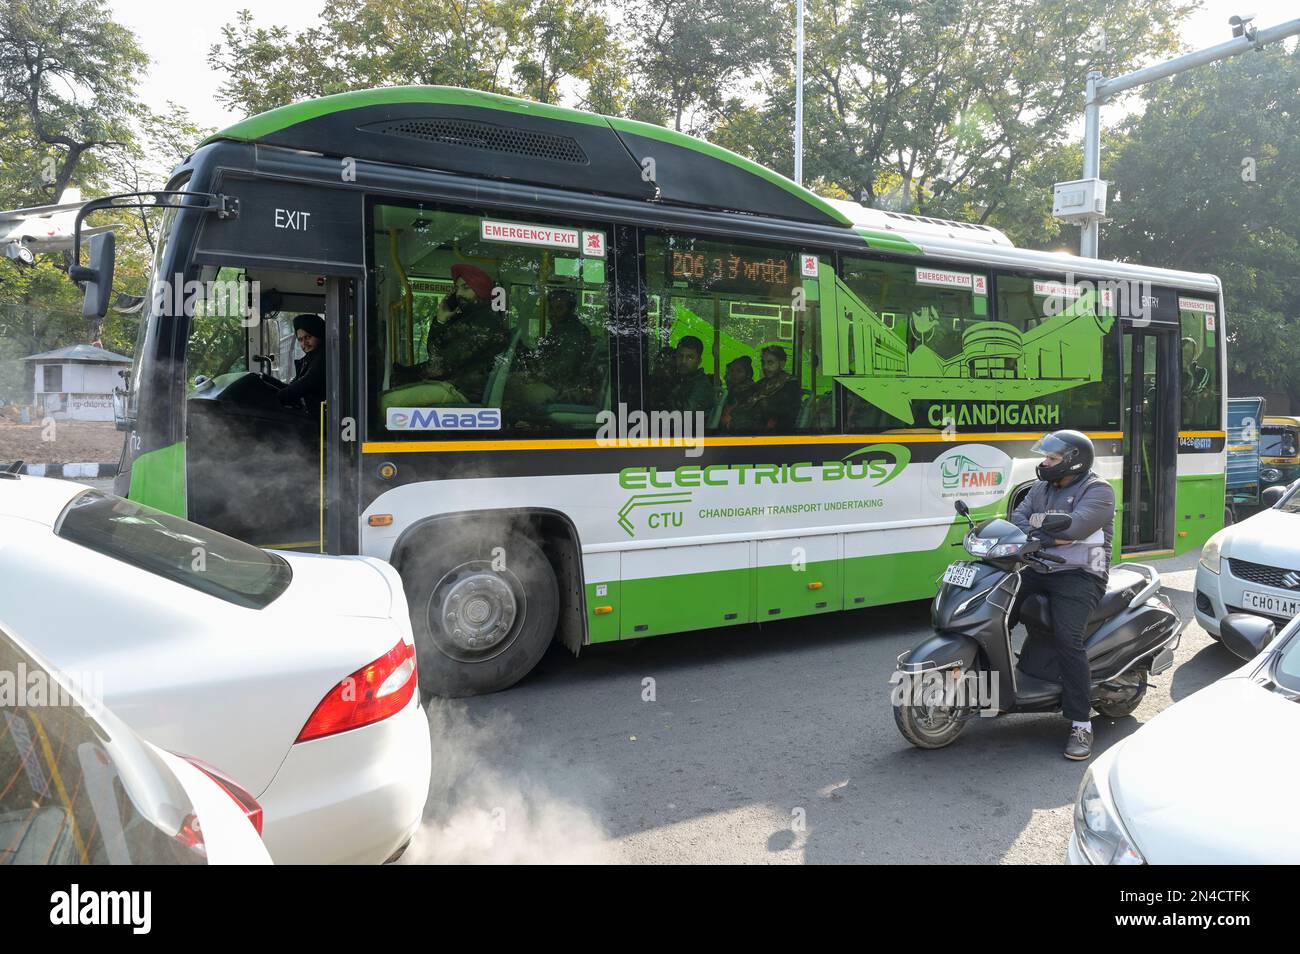 INDIA, Chandigarh, Ashok Leyland electric bus for public transport Stock Photo